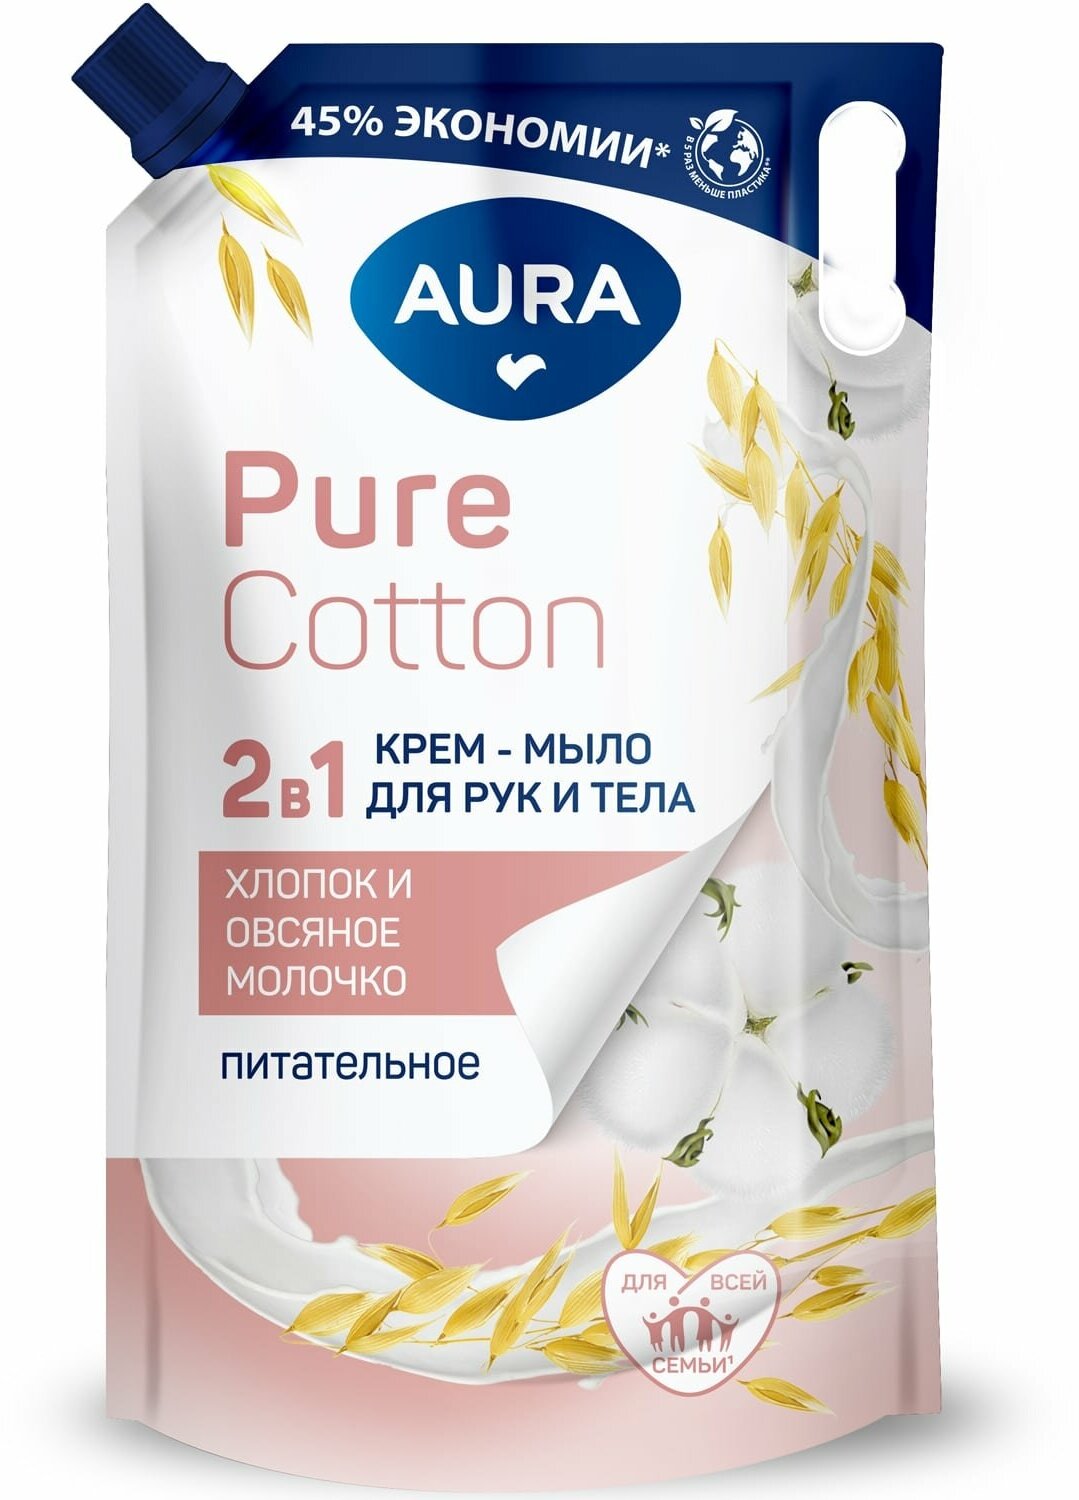 Питательное крем-мыло для рук и тела Pure Cotton с экстрактами хлопка и овсяного молочка, 850 мл AURA - фото №1